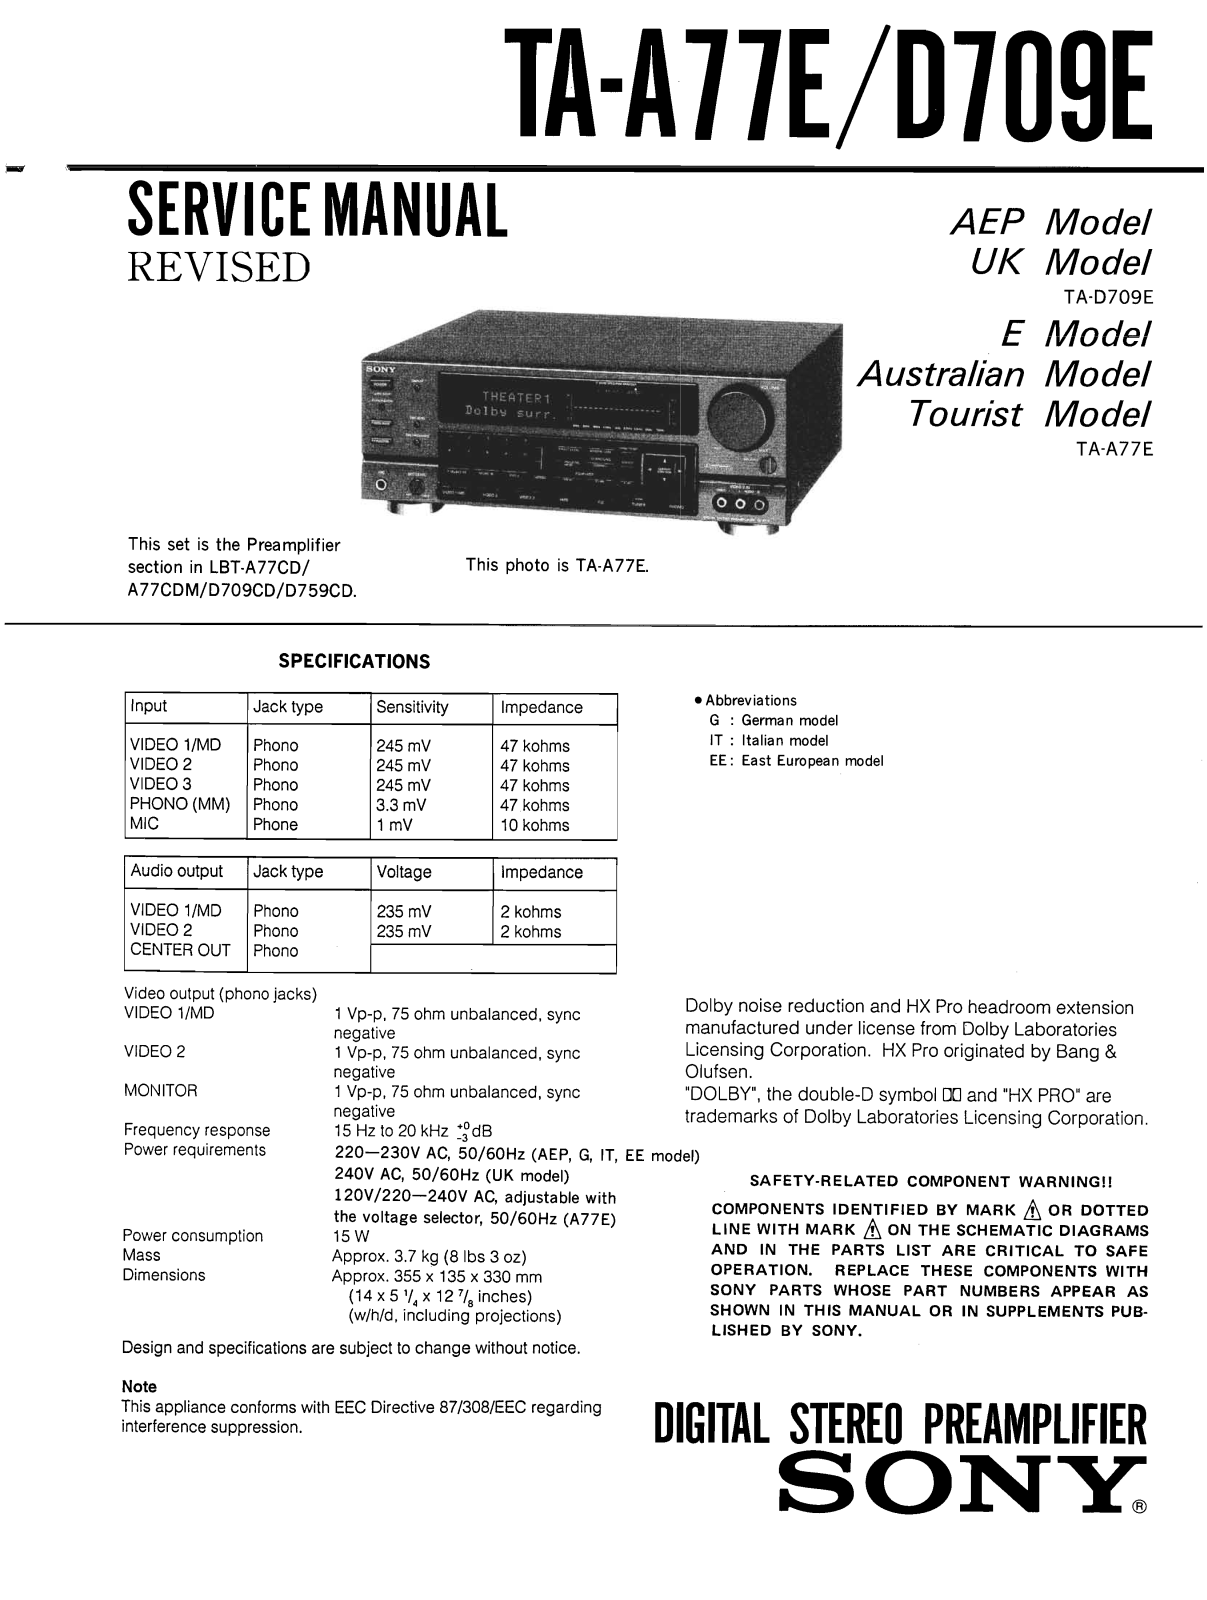 Sony TA-A77E Service Manual